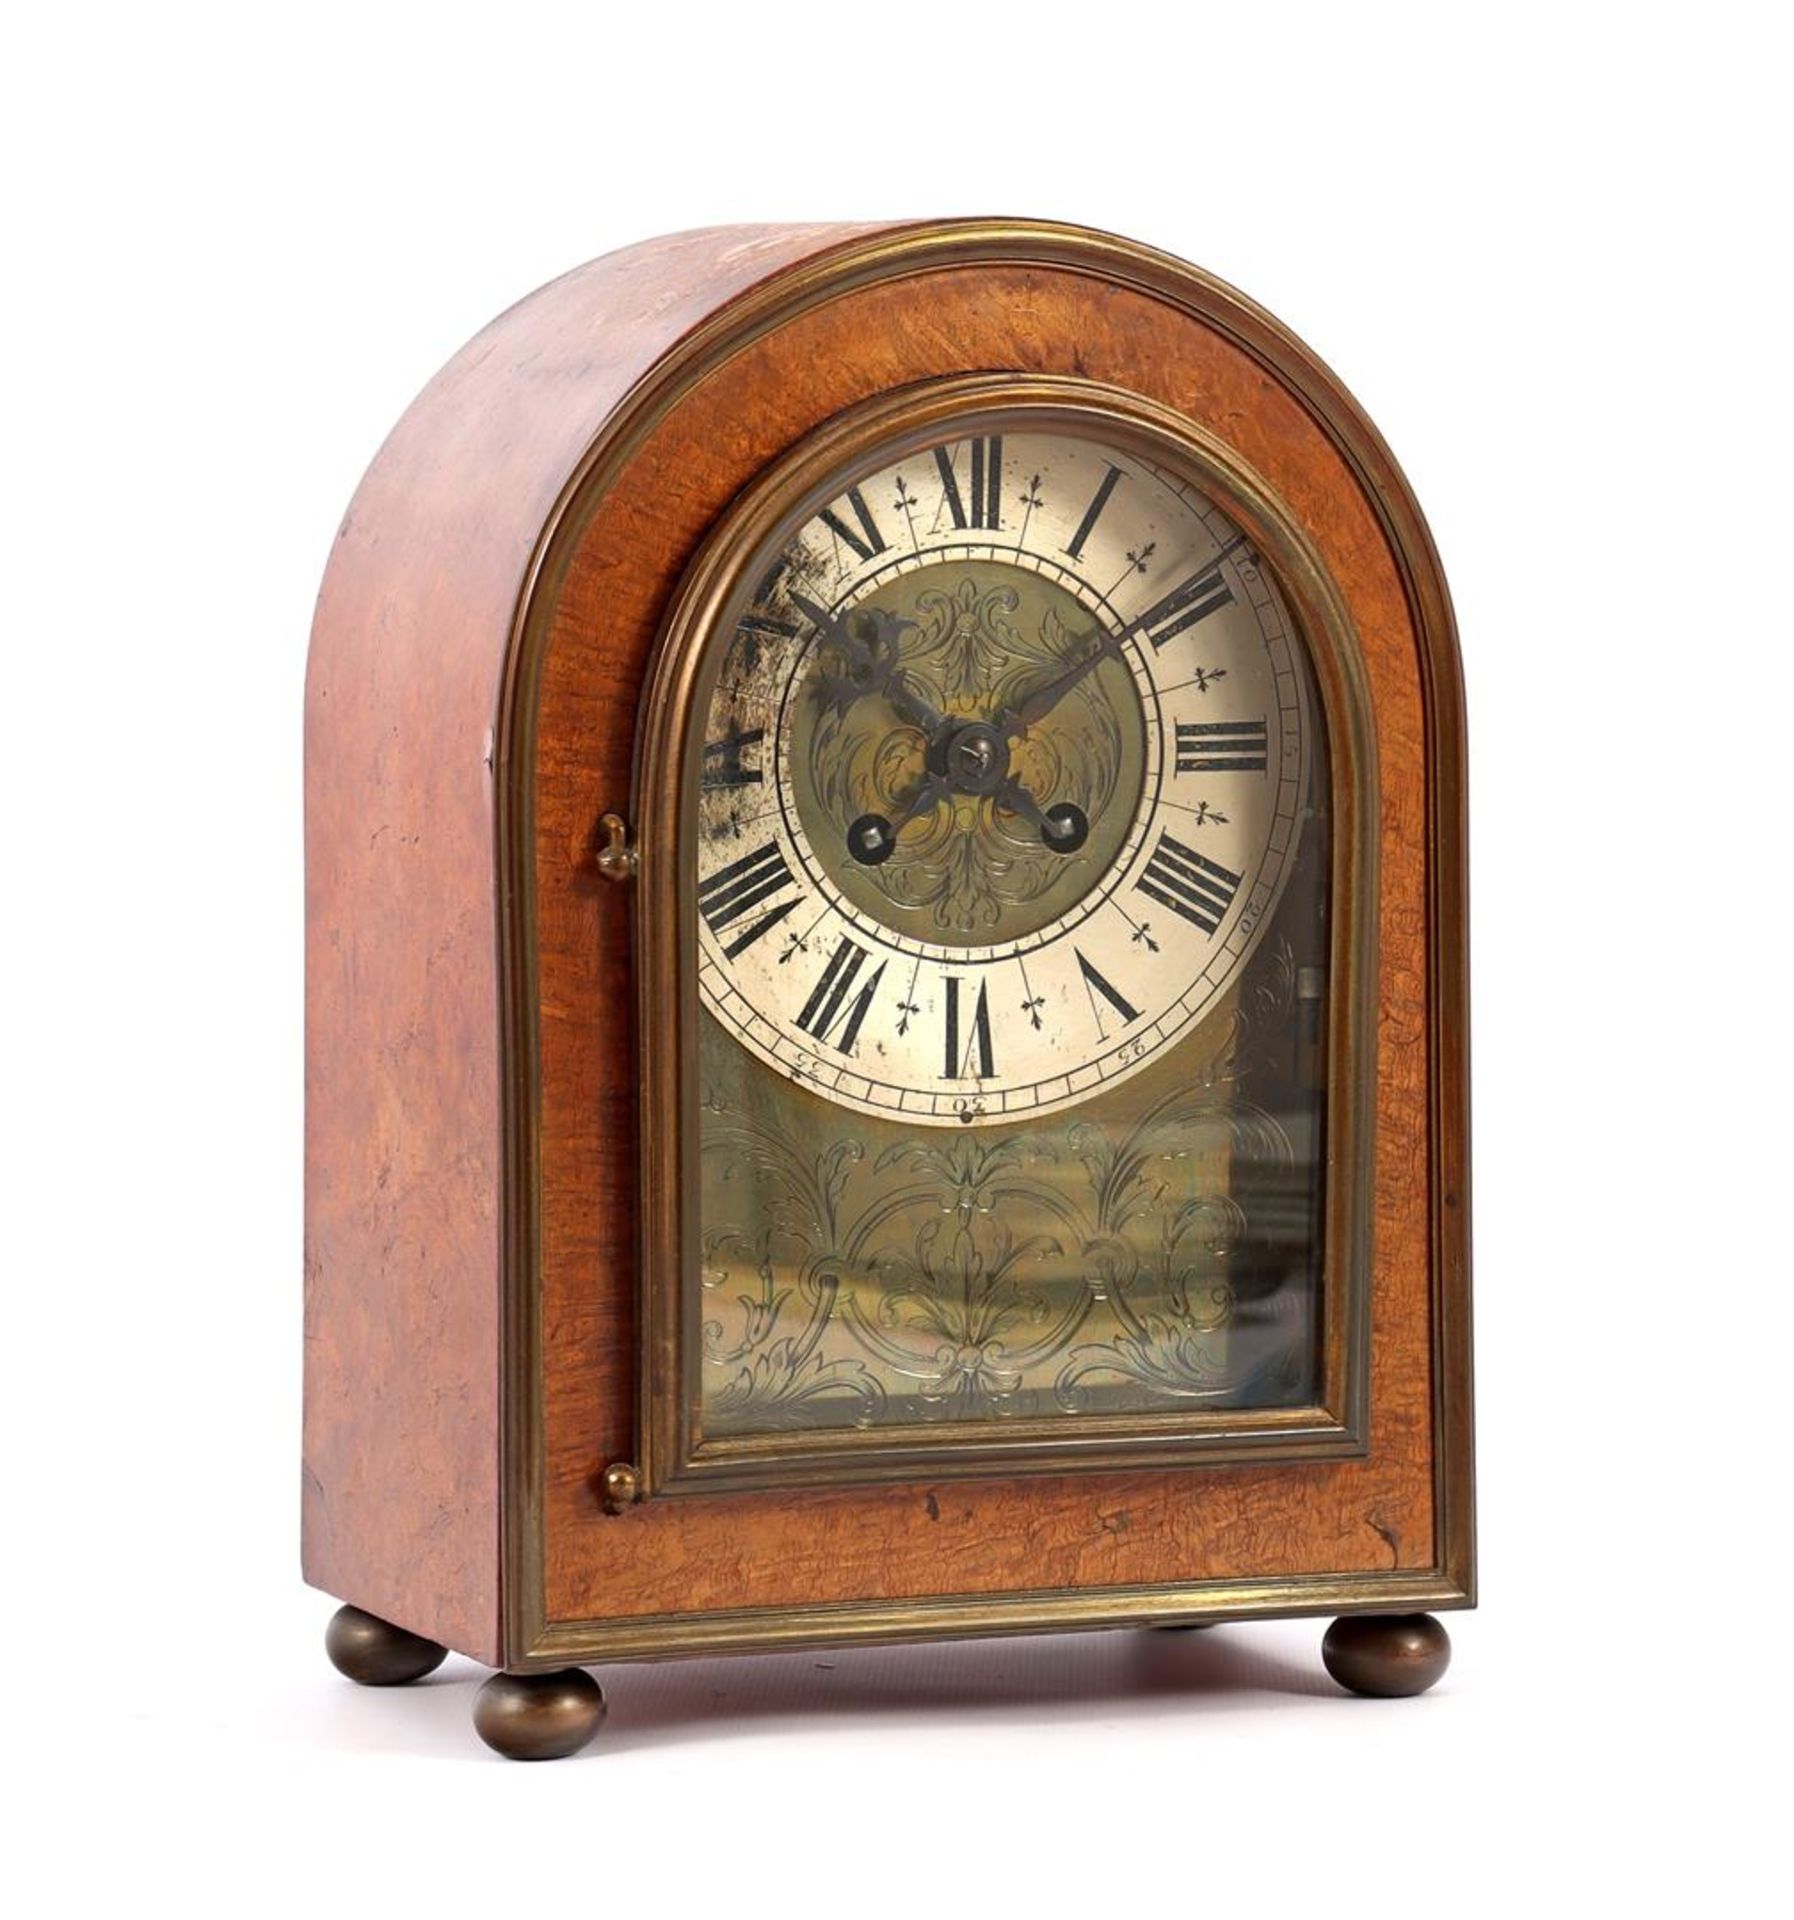 Table clock in a burr walnut case